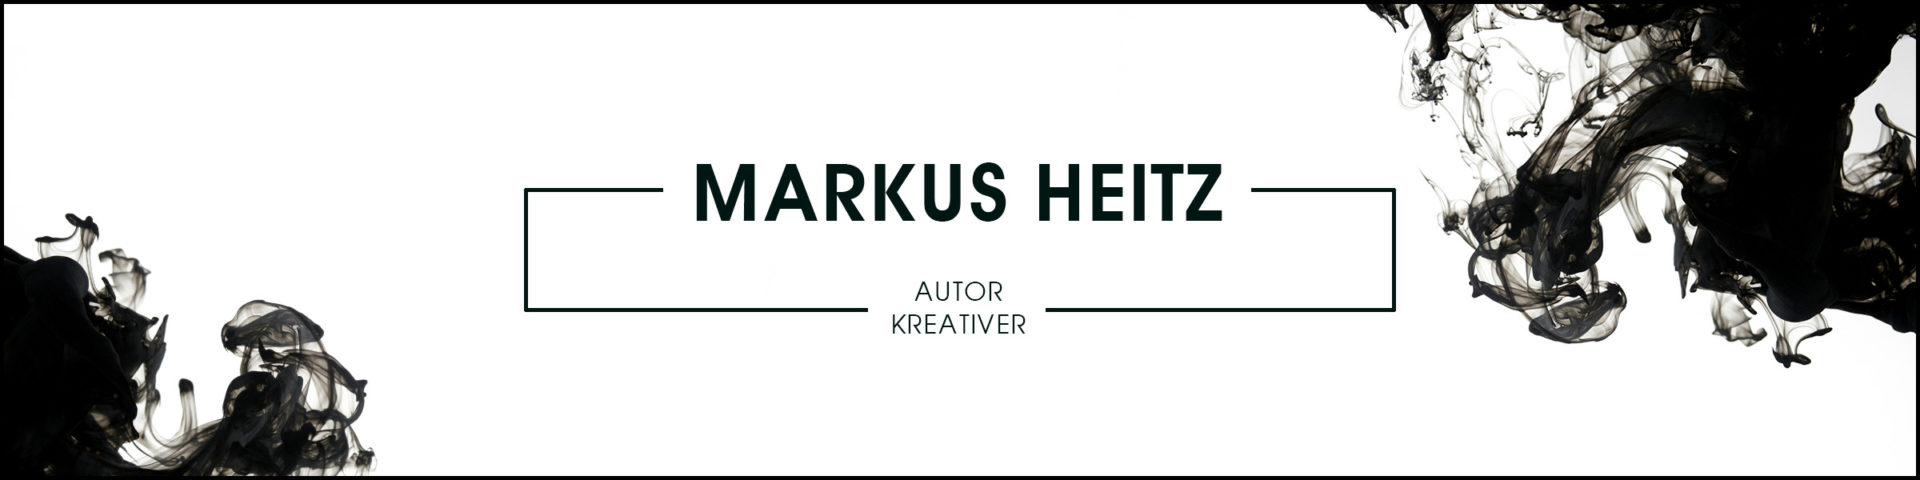 Markus Heitz